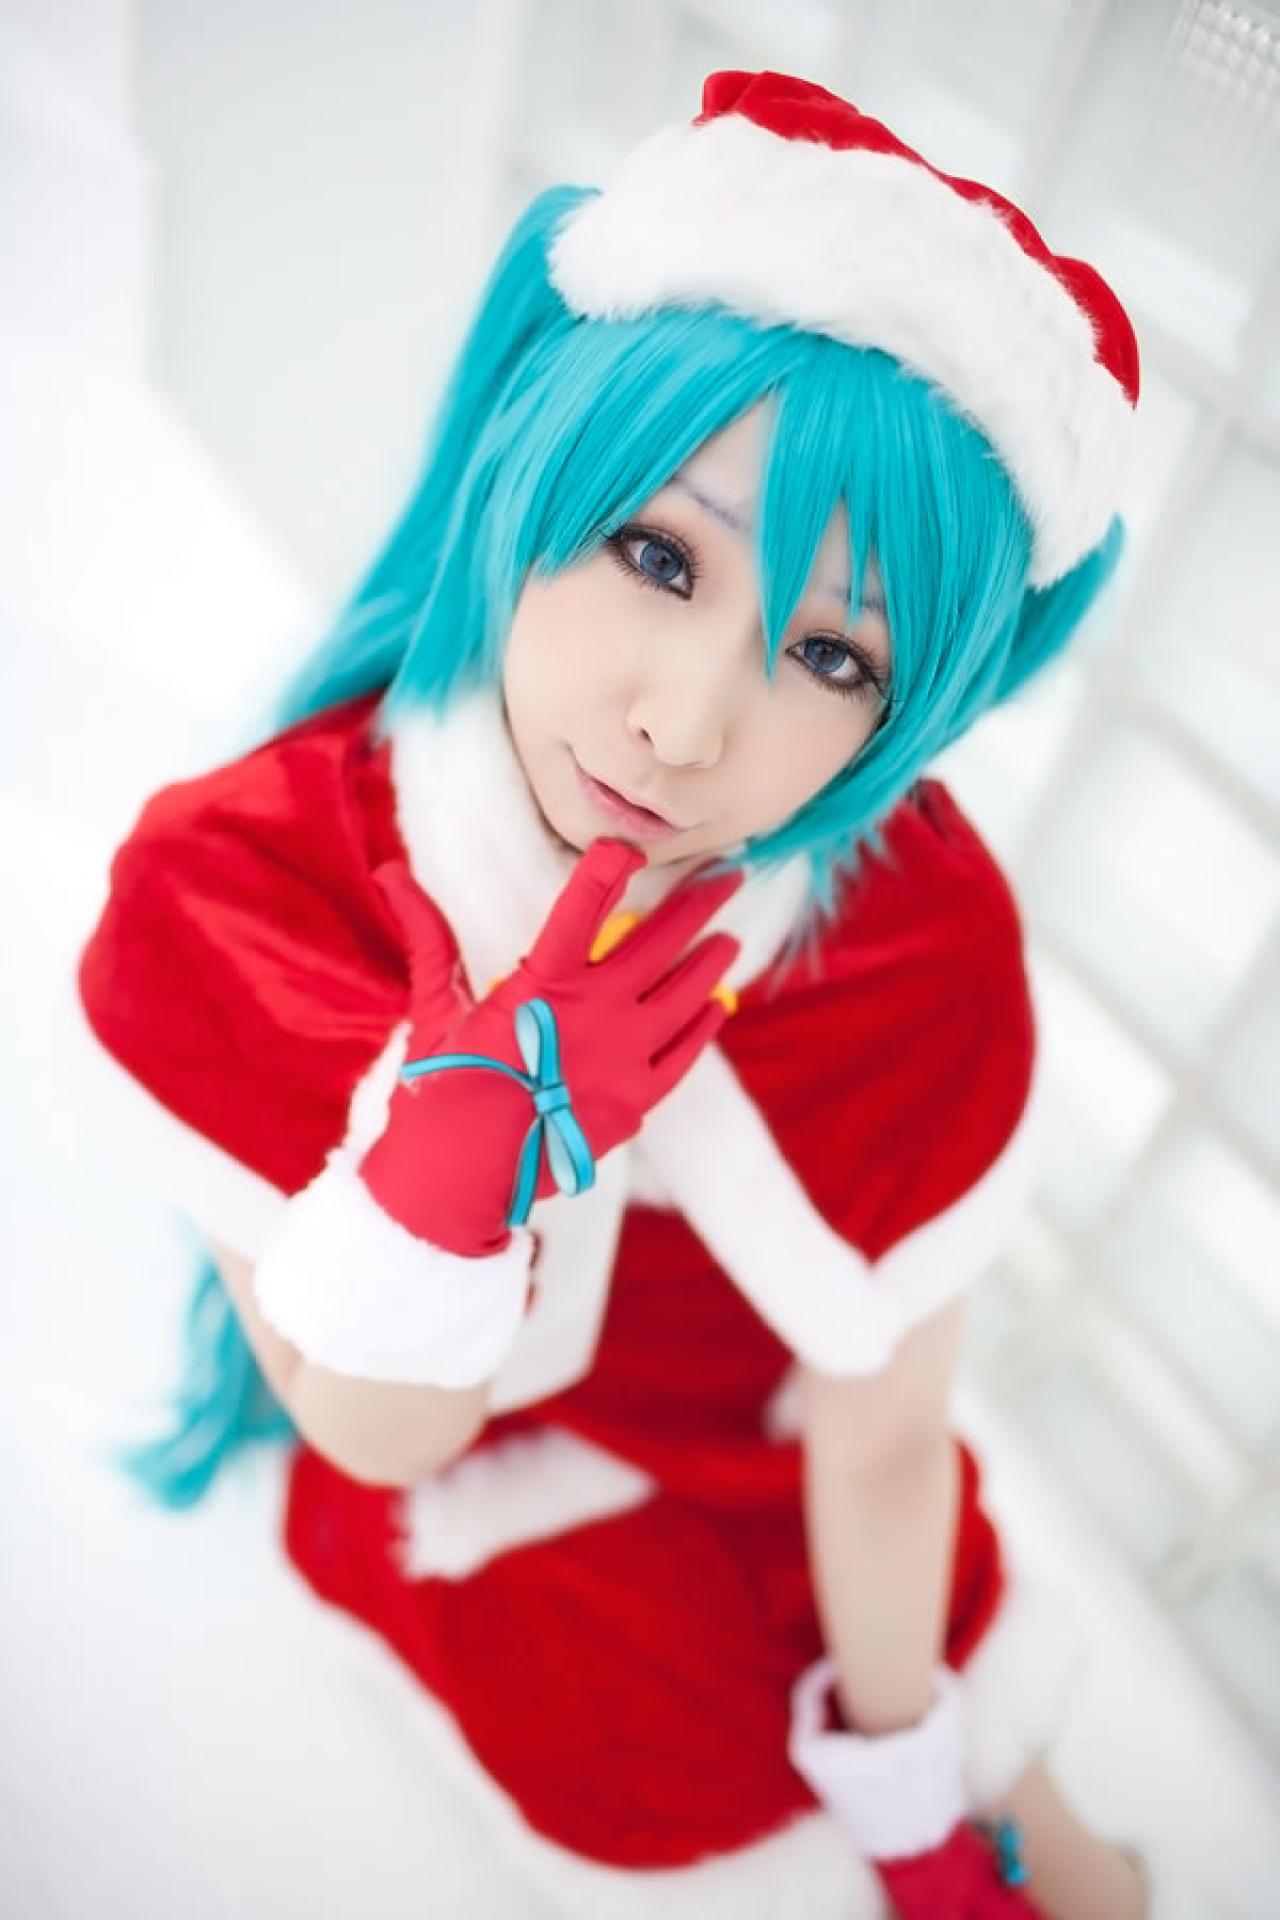 Miiko穿着初音圣诞礼服一只手的食指抵住下巴，嘟着嘴卖萌